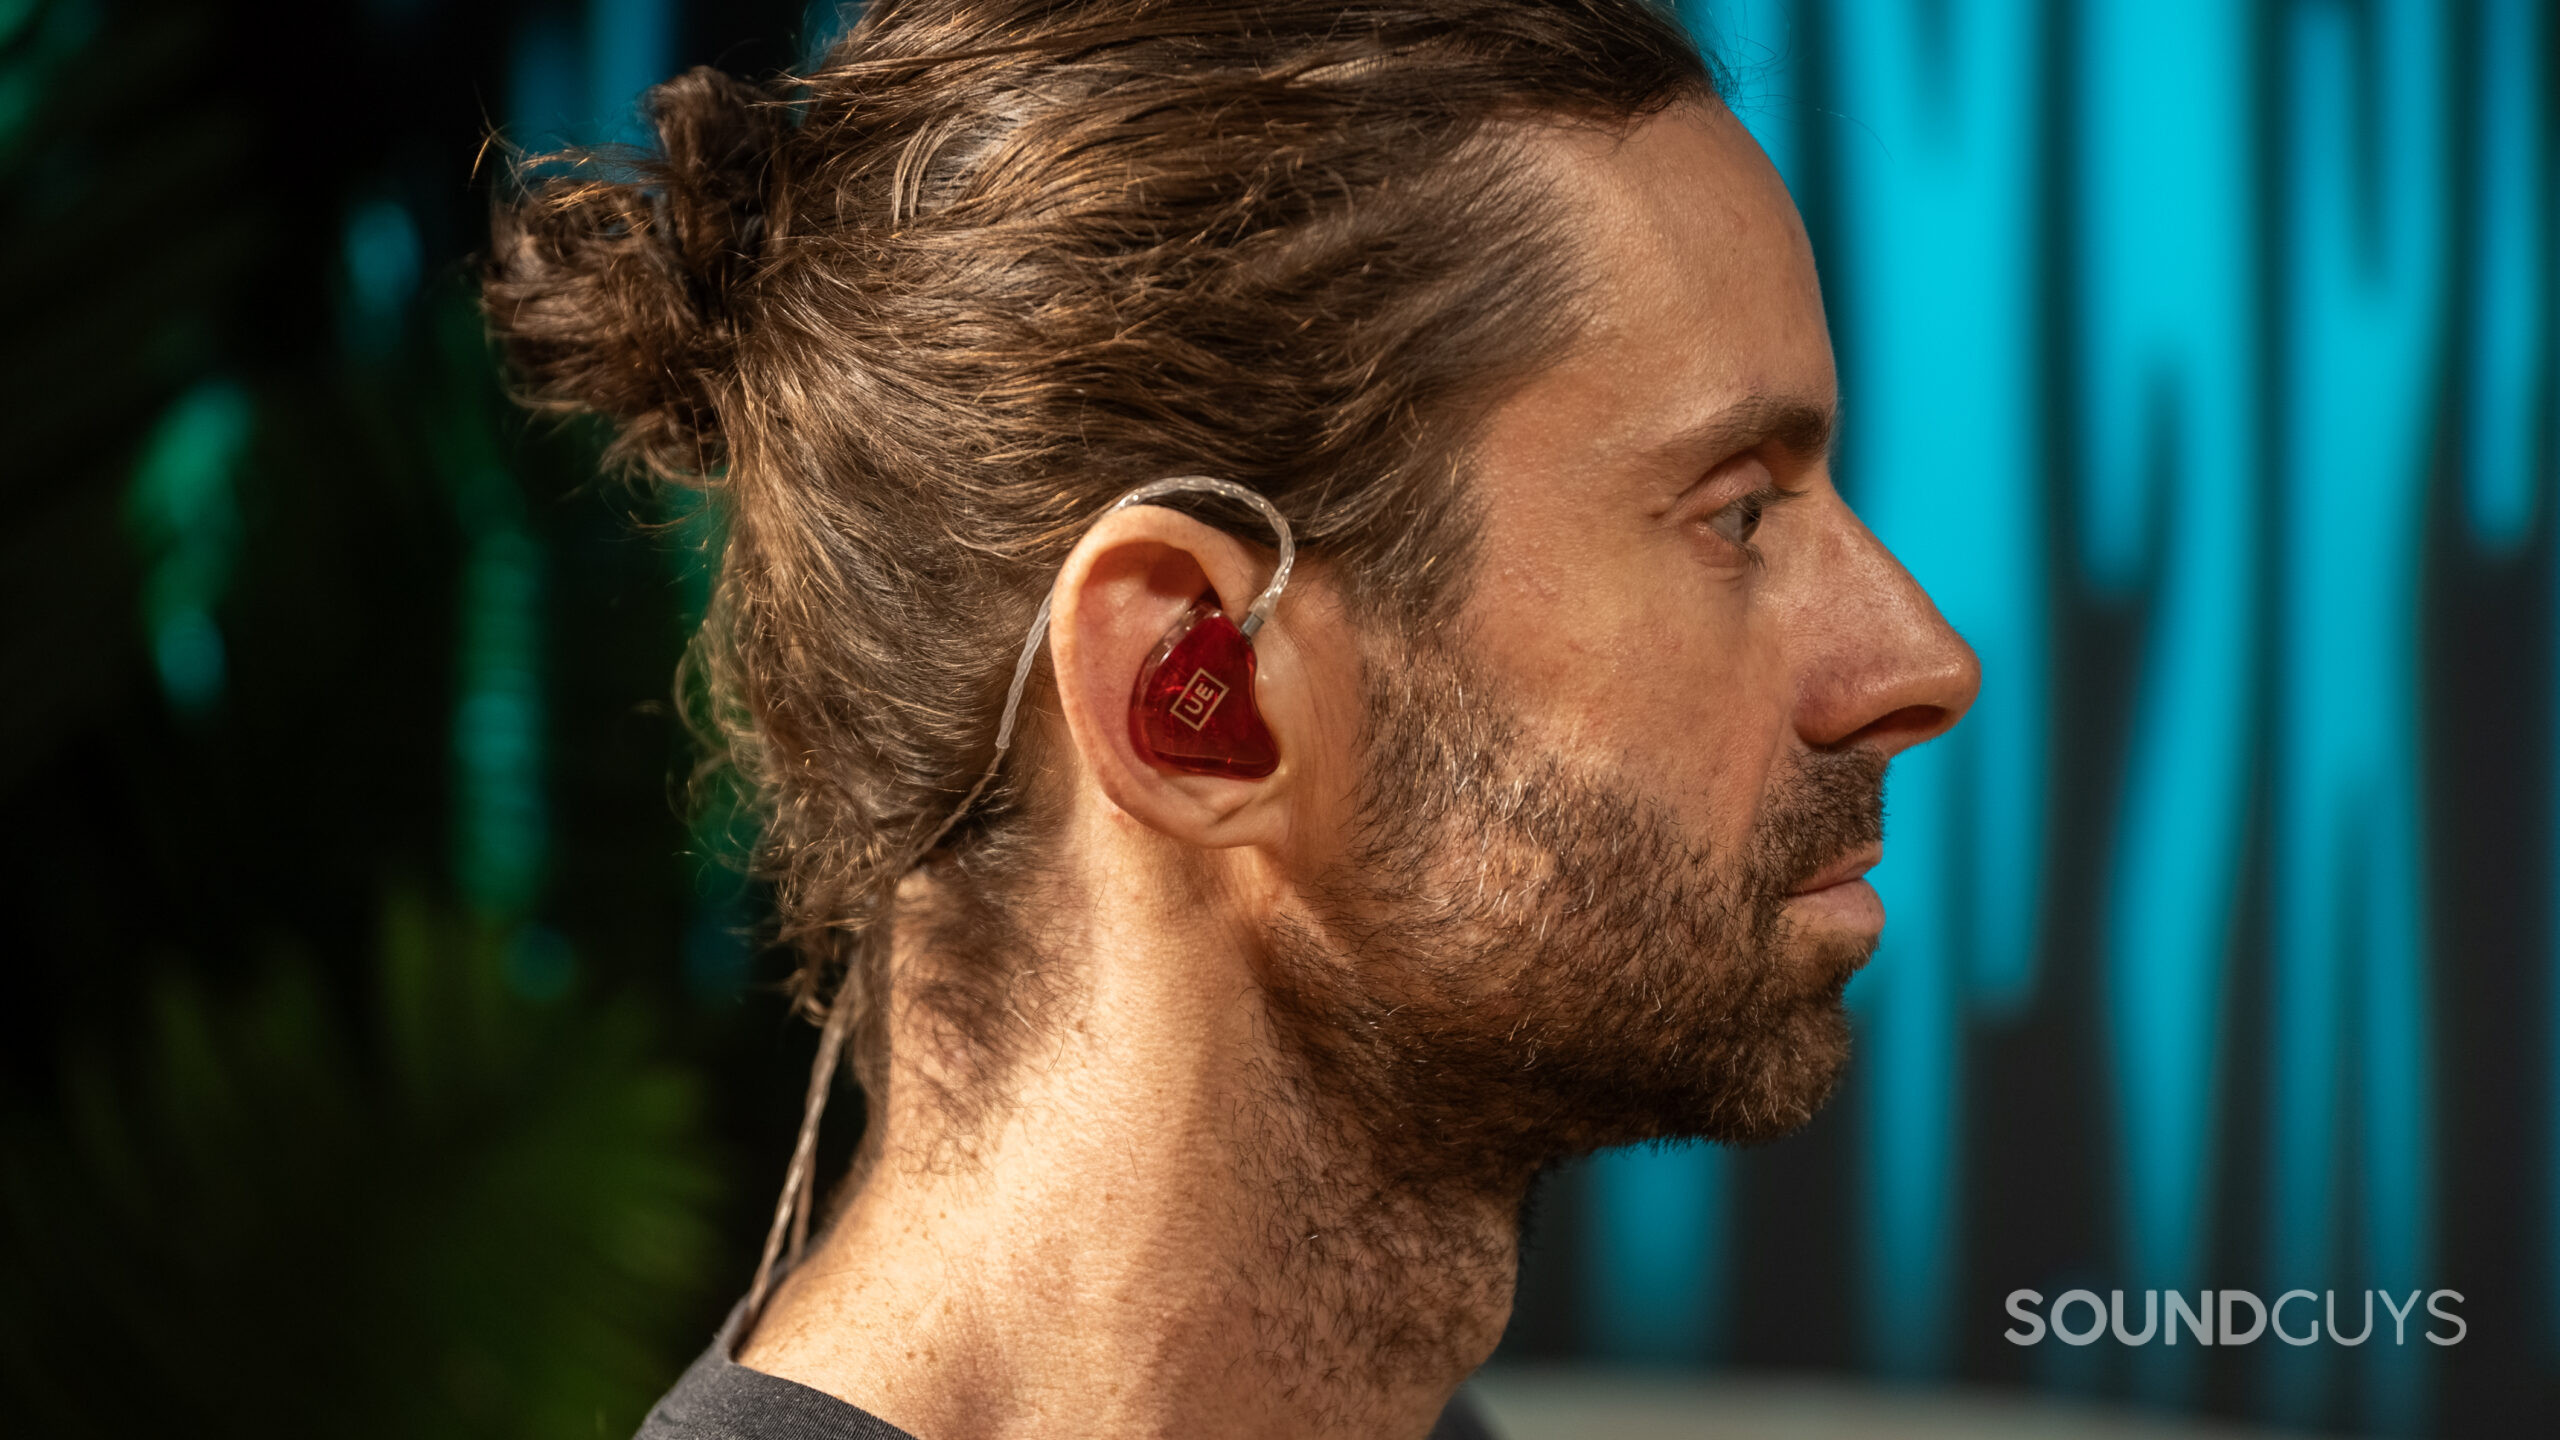 Ultimate Ears UE Premier worn in ear profile